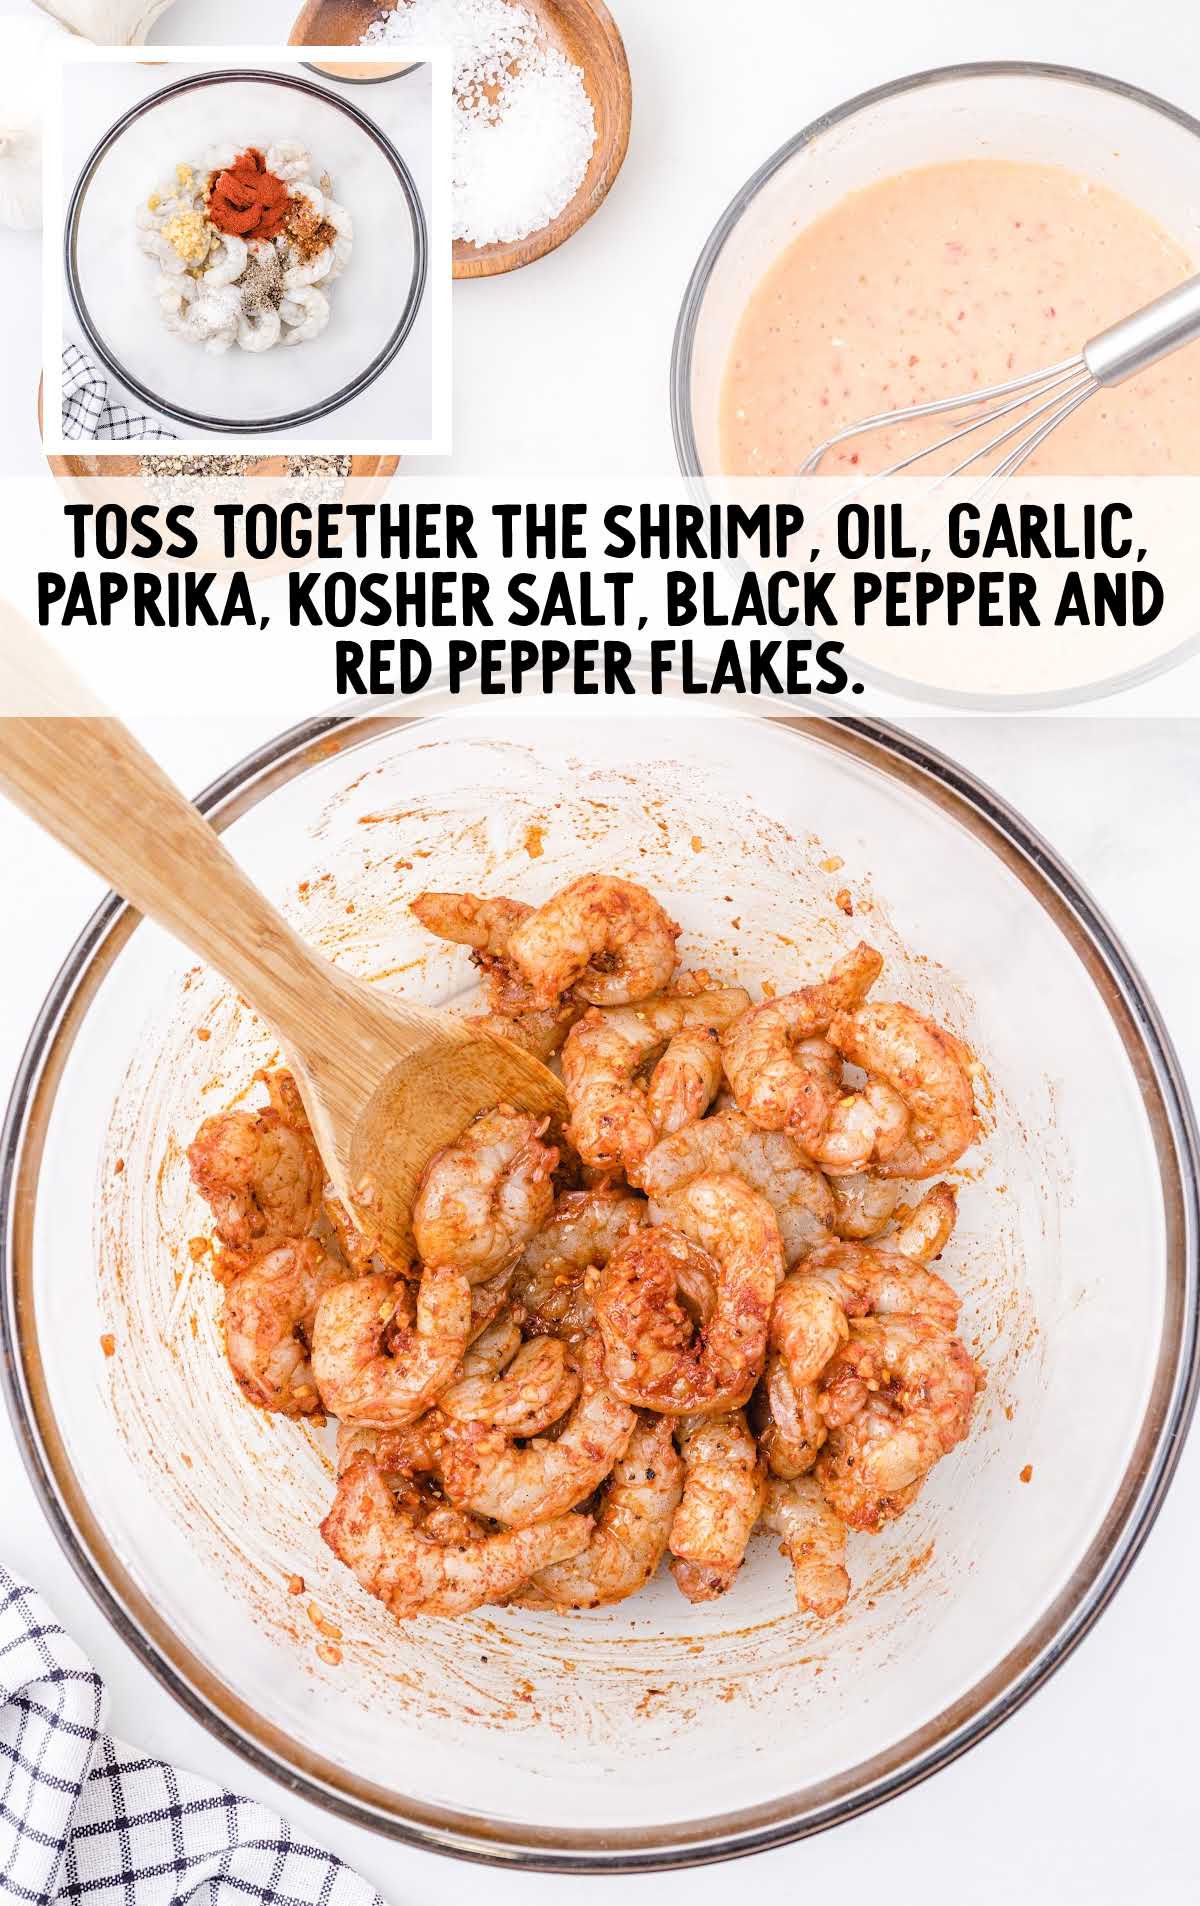 bang bang shrimp pasta process shot of shrimp and seasonings in a bowl